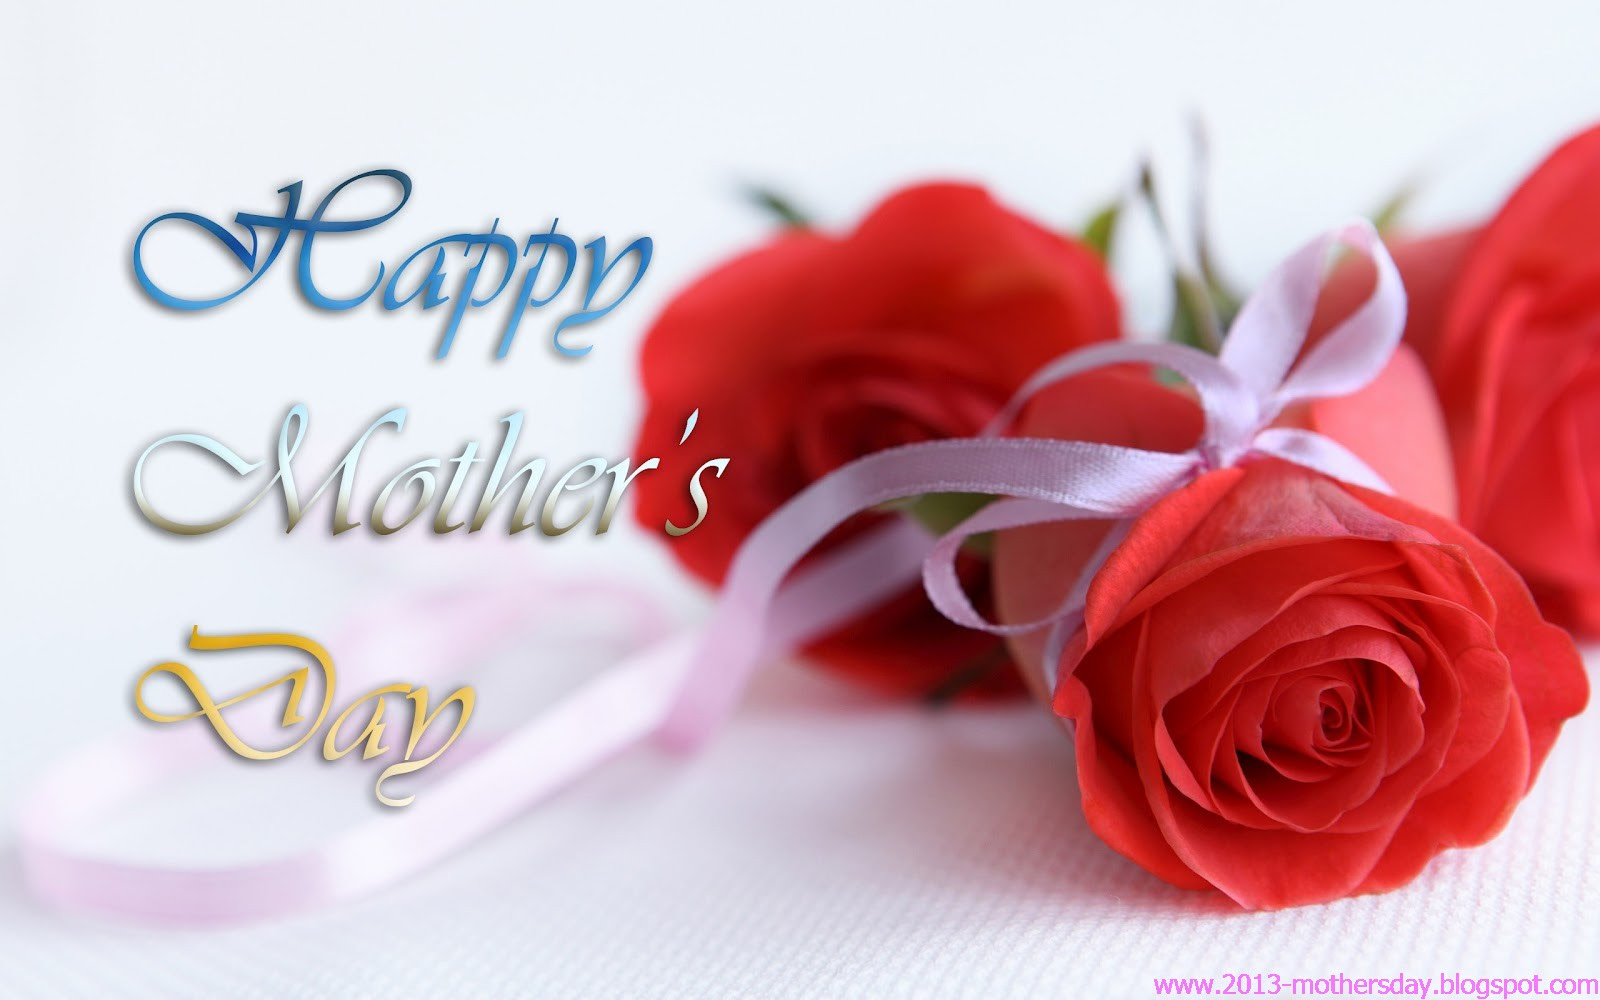 Happy Mother's Day ?u=http%3A%2F%2F4.bp.blogspot.com%2F-HHY_5qzQaAs%2FUSnHLNg8-eI%2FAAAAAAAAEv8%2FxxzPkiZ6Jlw%2Fs1600%2F2013-mothers-day-HD%2Bwallpaper